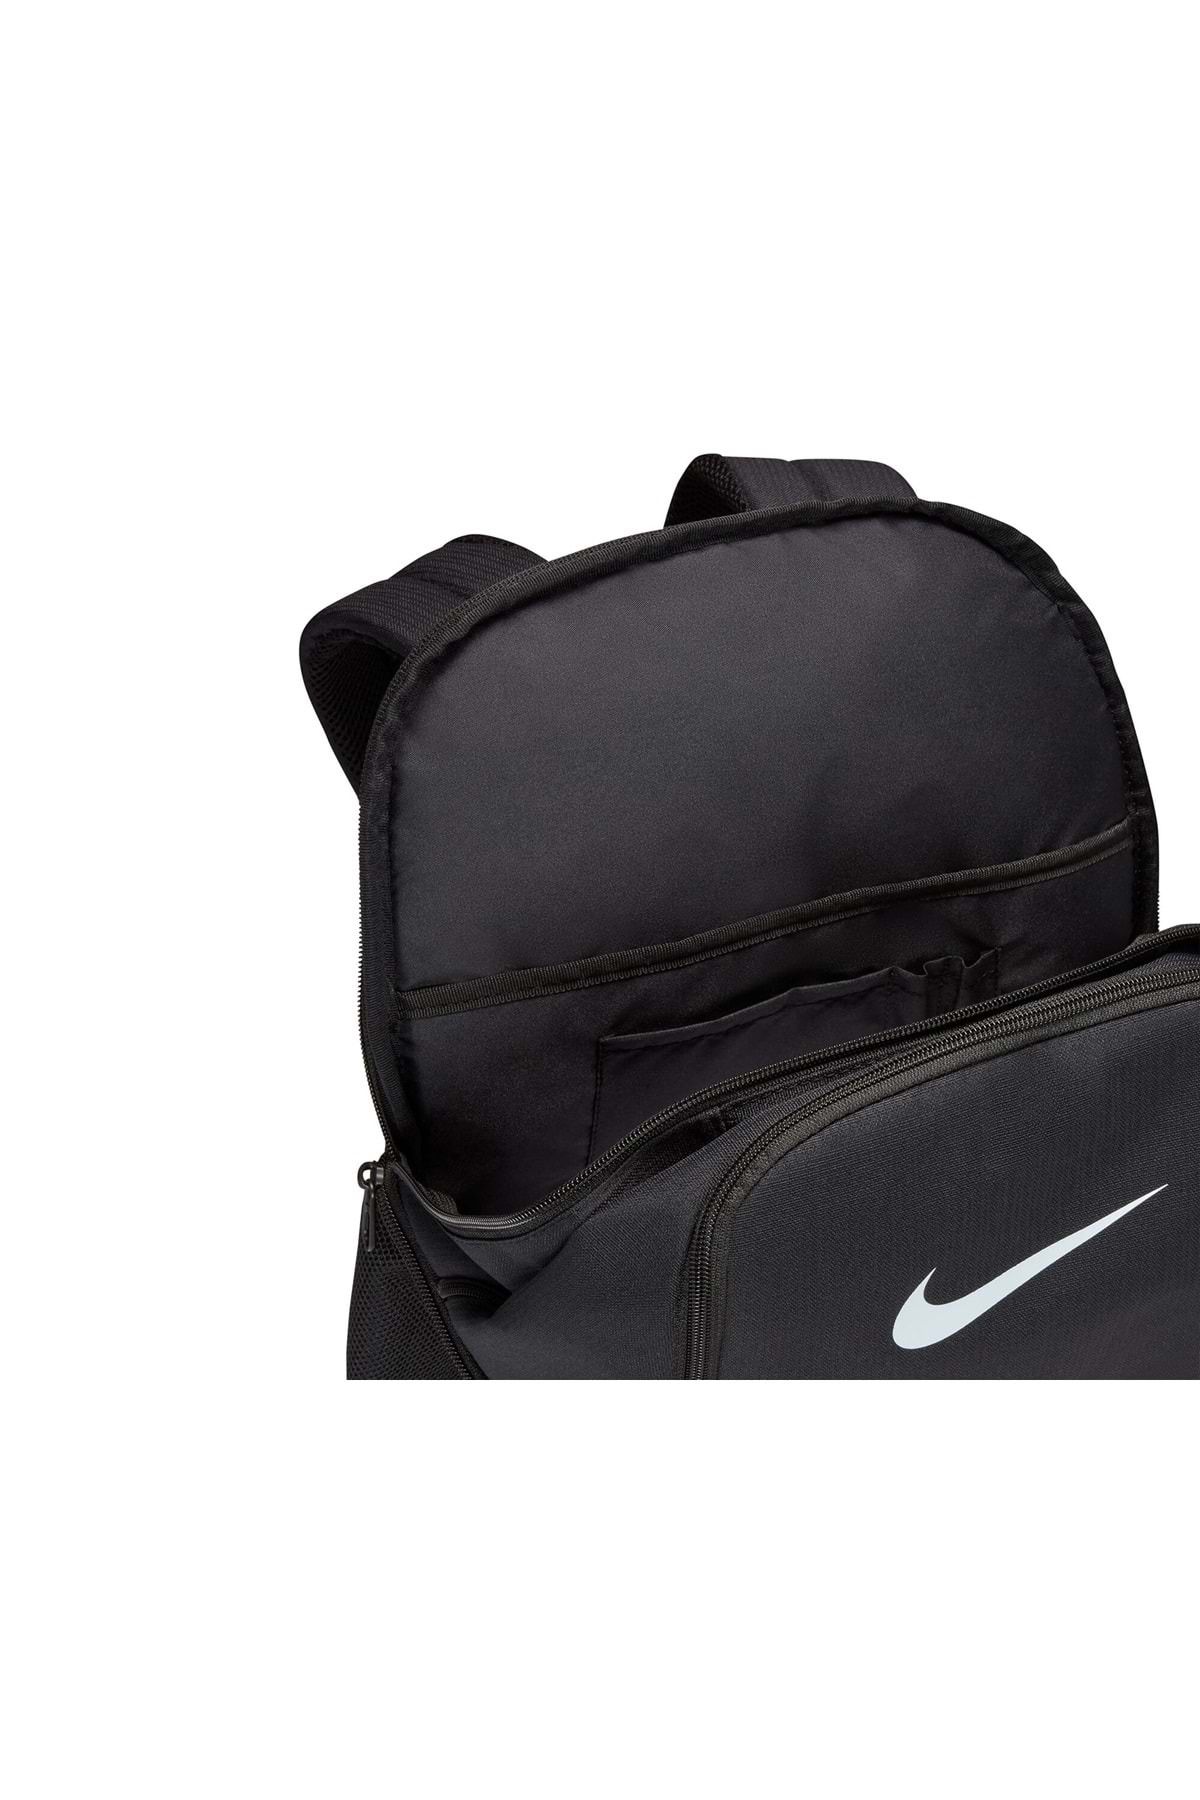 Nike Brasilia 9.5 Sırt Çantası Dh7709-010 Fiyatı, Yorumları - Trendyol